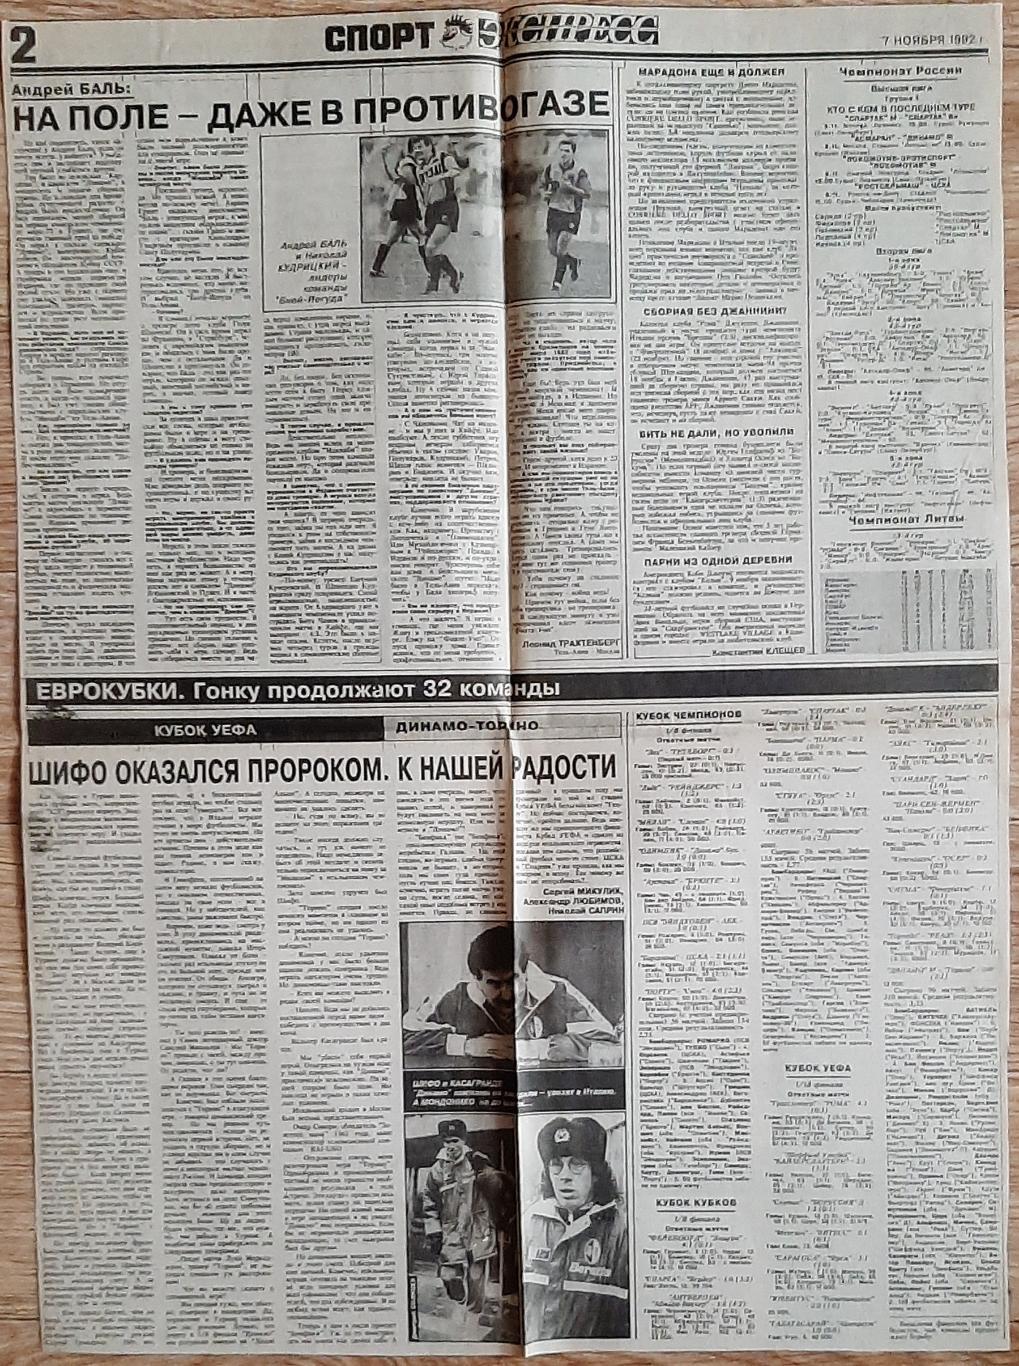 Вирізка з газети Спорт експрес #215 (7 листопада 1992) Інтерв'ю А.Баль 1